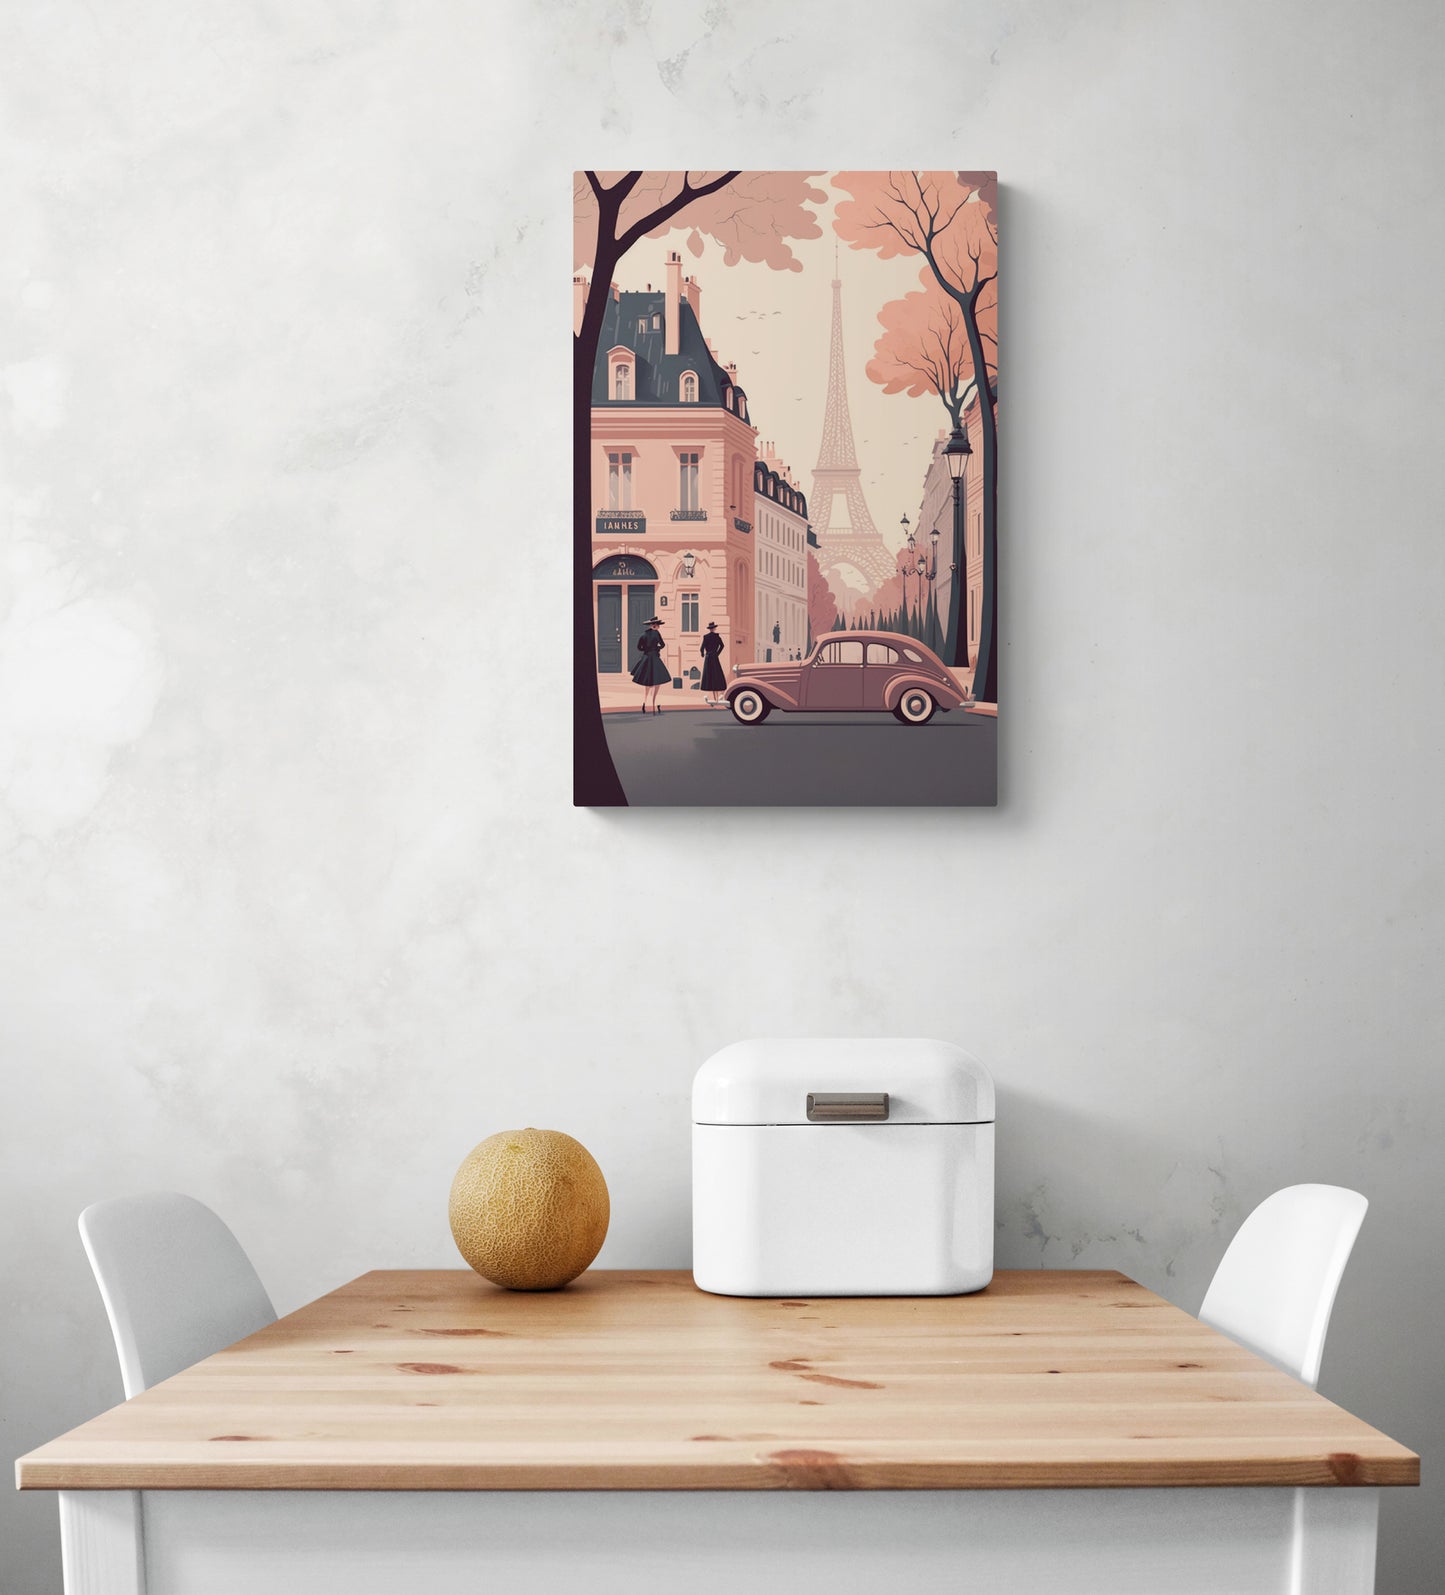 Tableau metal vintage dans un style rétro des années cinquante avec des couleurs pâles rose et gris est accroché au milieu d'un mur blanc. Sur ce tableau pour cuisine on peut apercevoir une ruelle et des bâtiments parisiens, en arrière-plan on aperçoit la tour Eiffel. Sur la photo il y a également une table et deux chaises blanches.